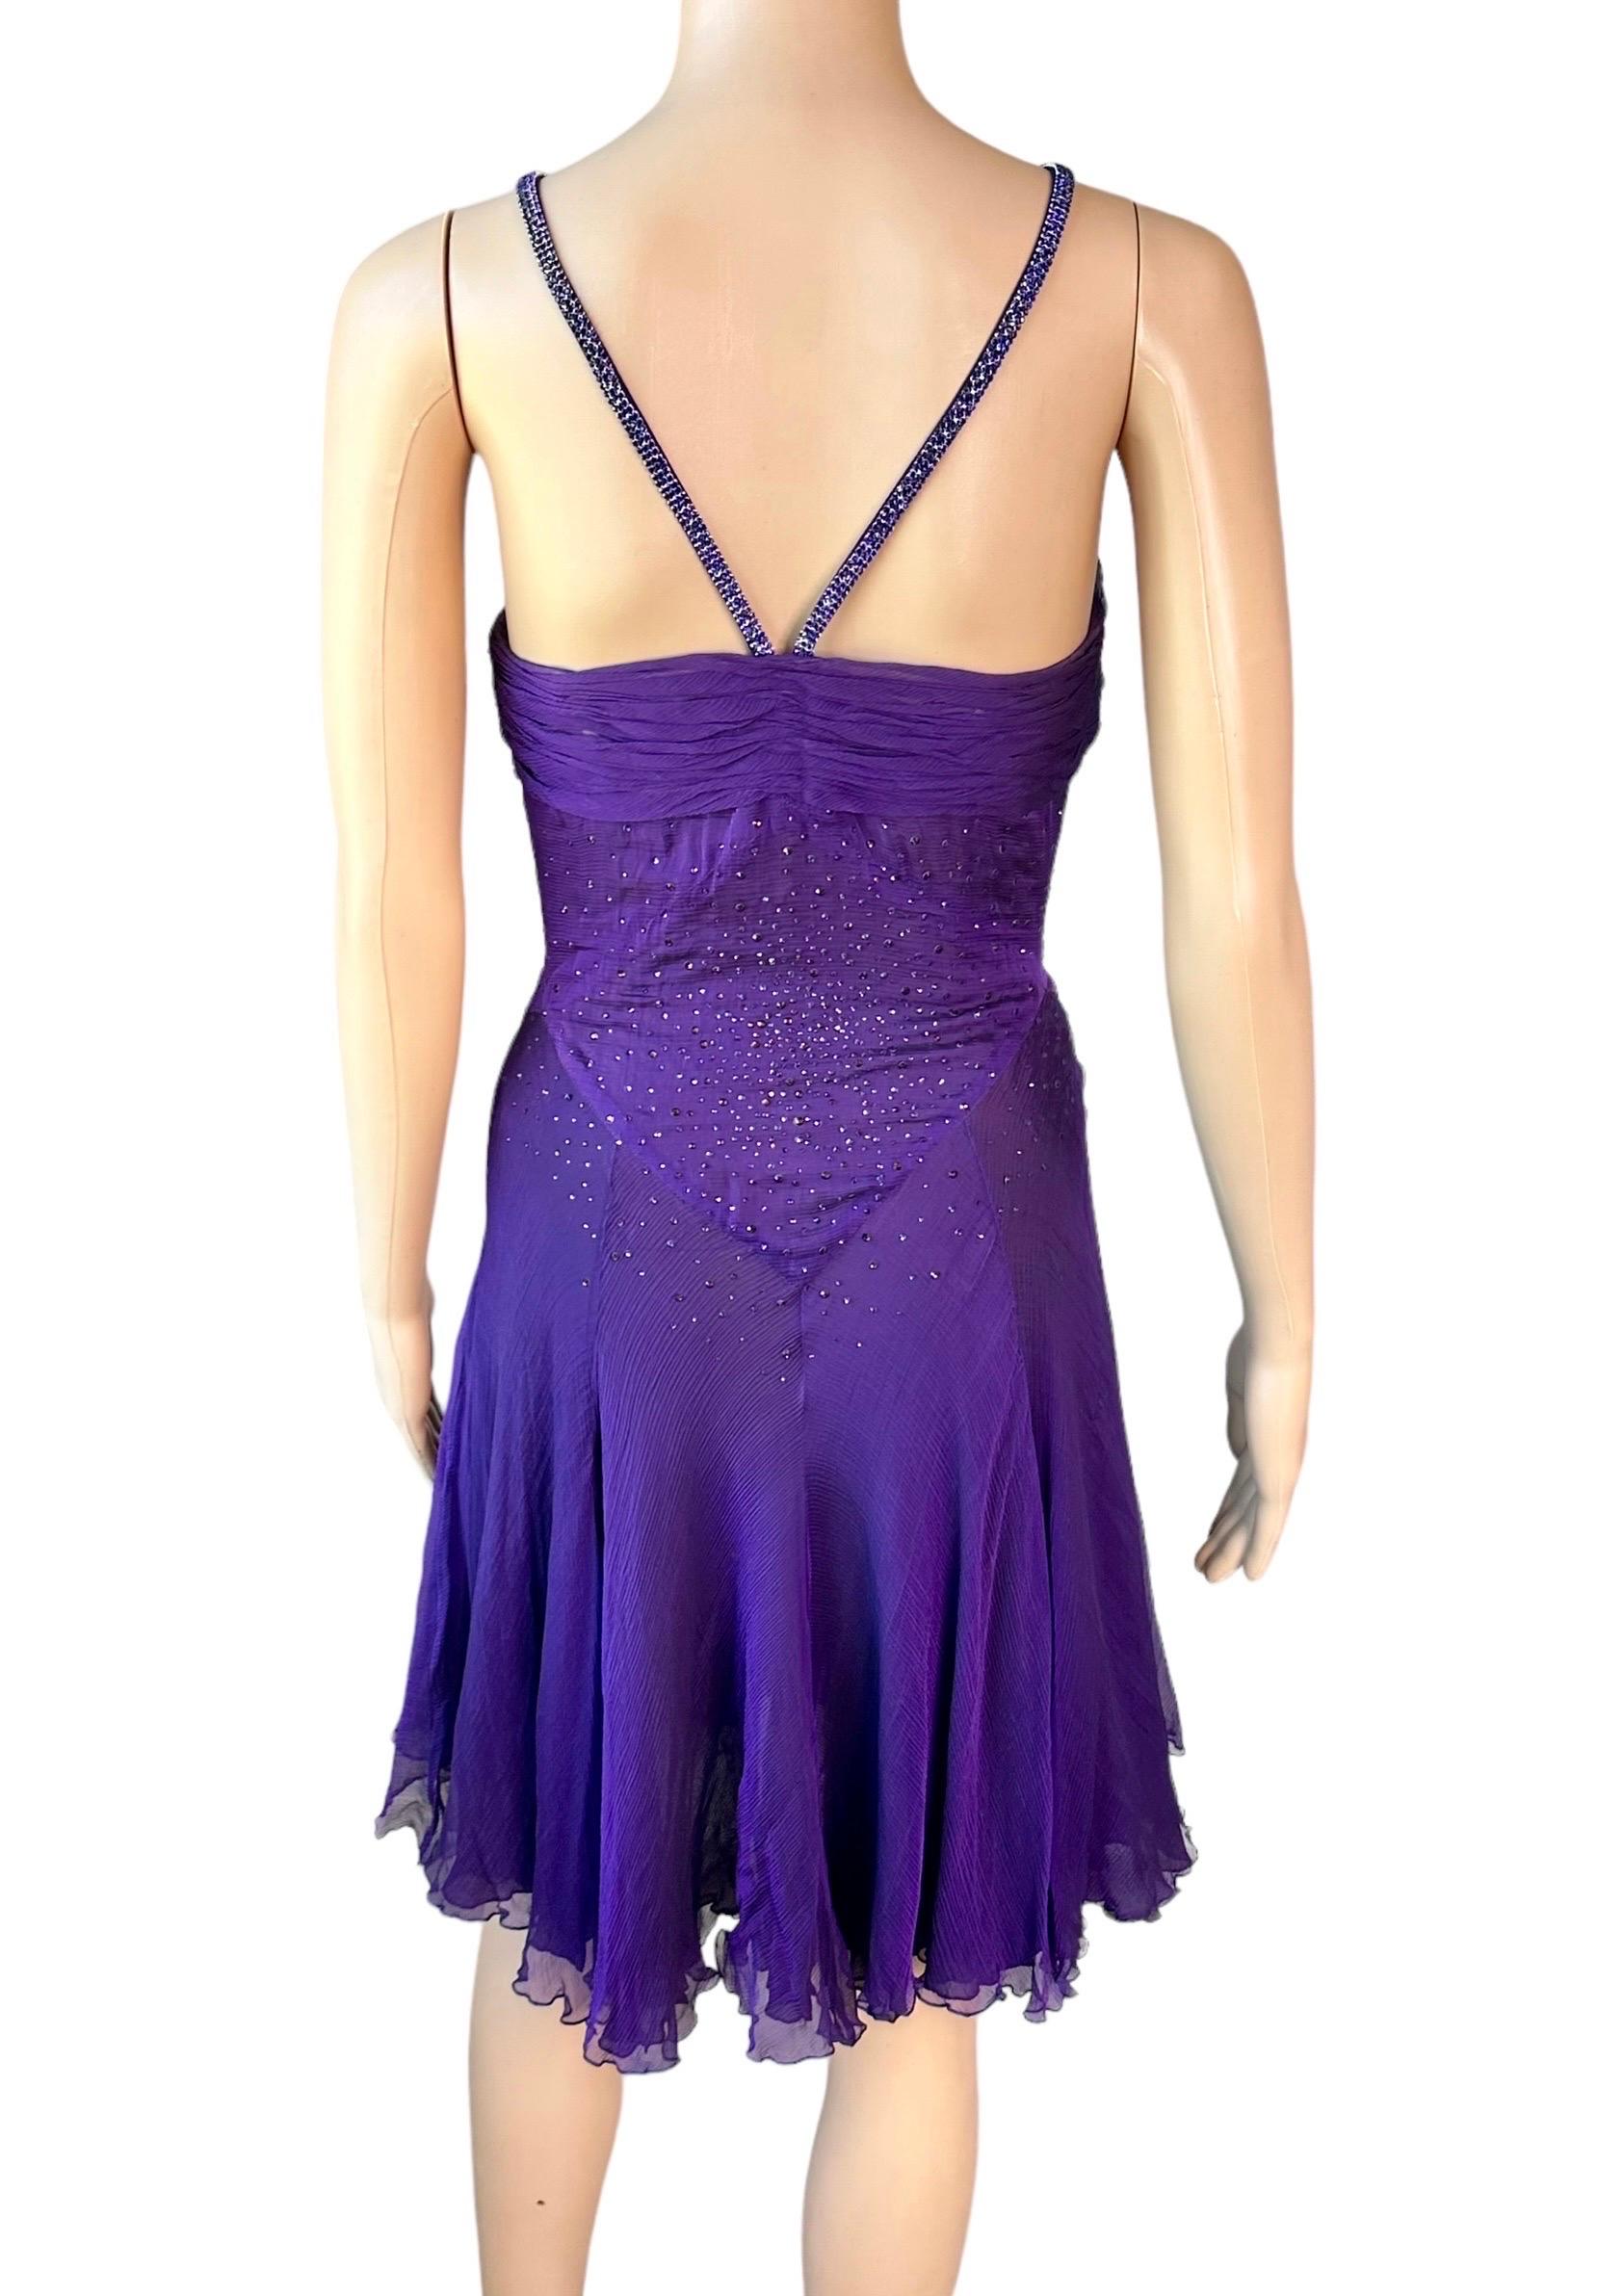 Versace c.2007 Crystal Embellished Plunging Neckline Semi-Sheer Purple Dress For Sale 10